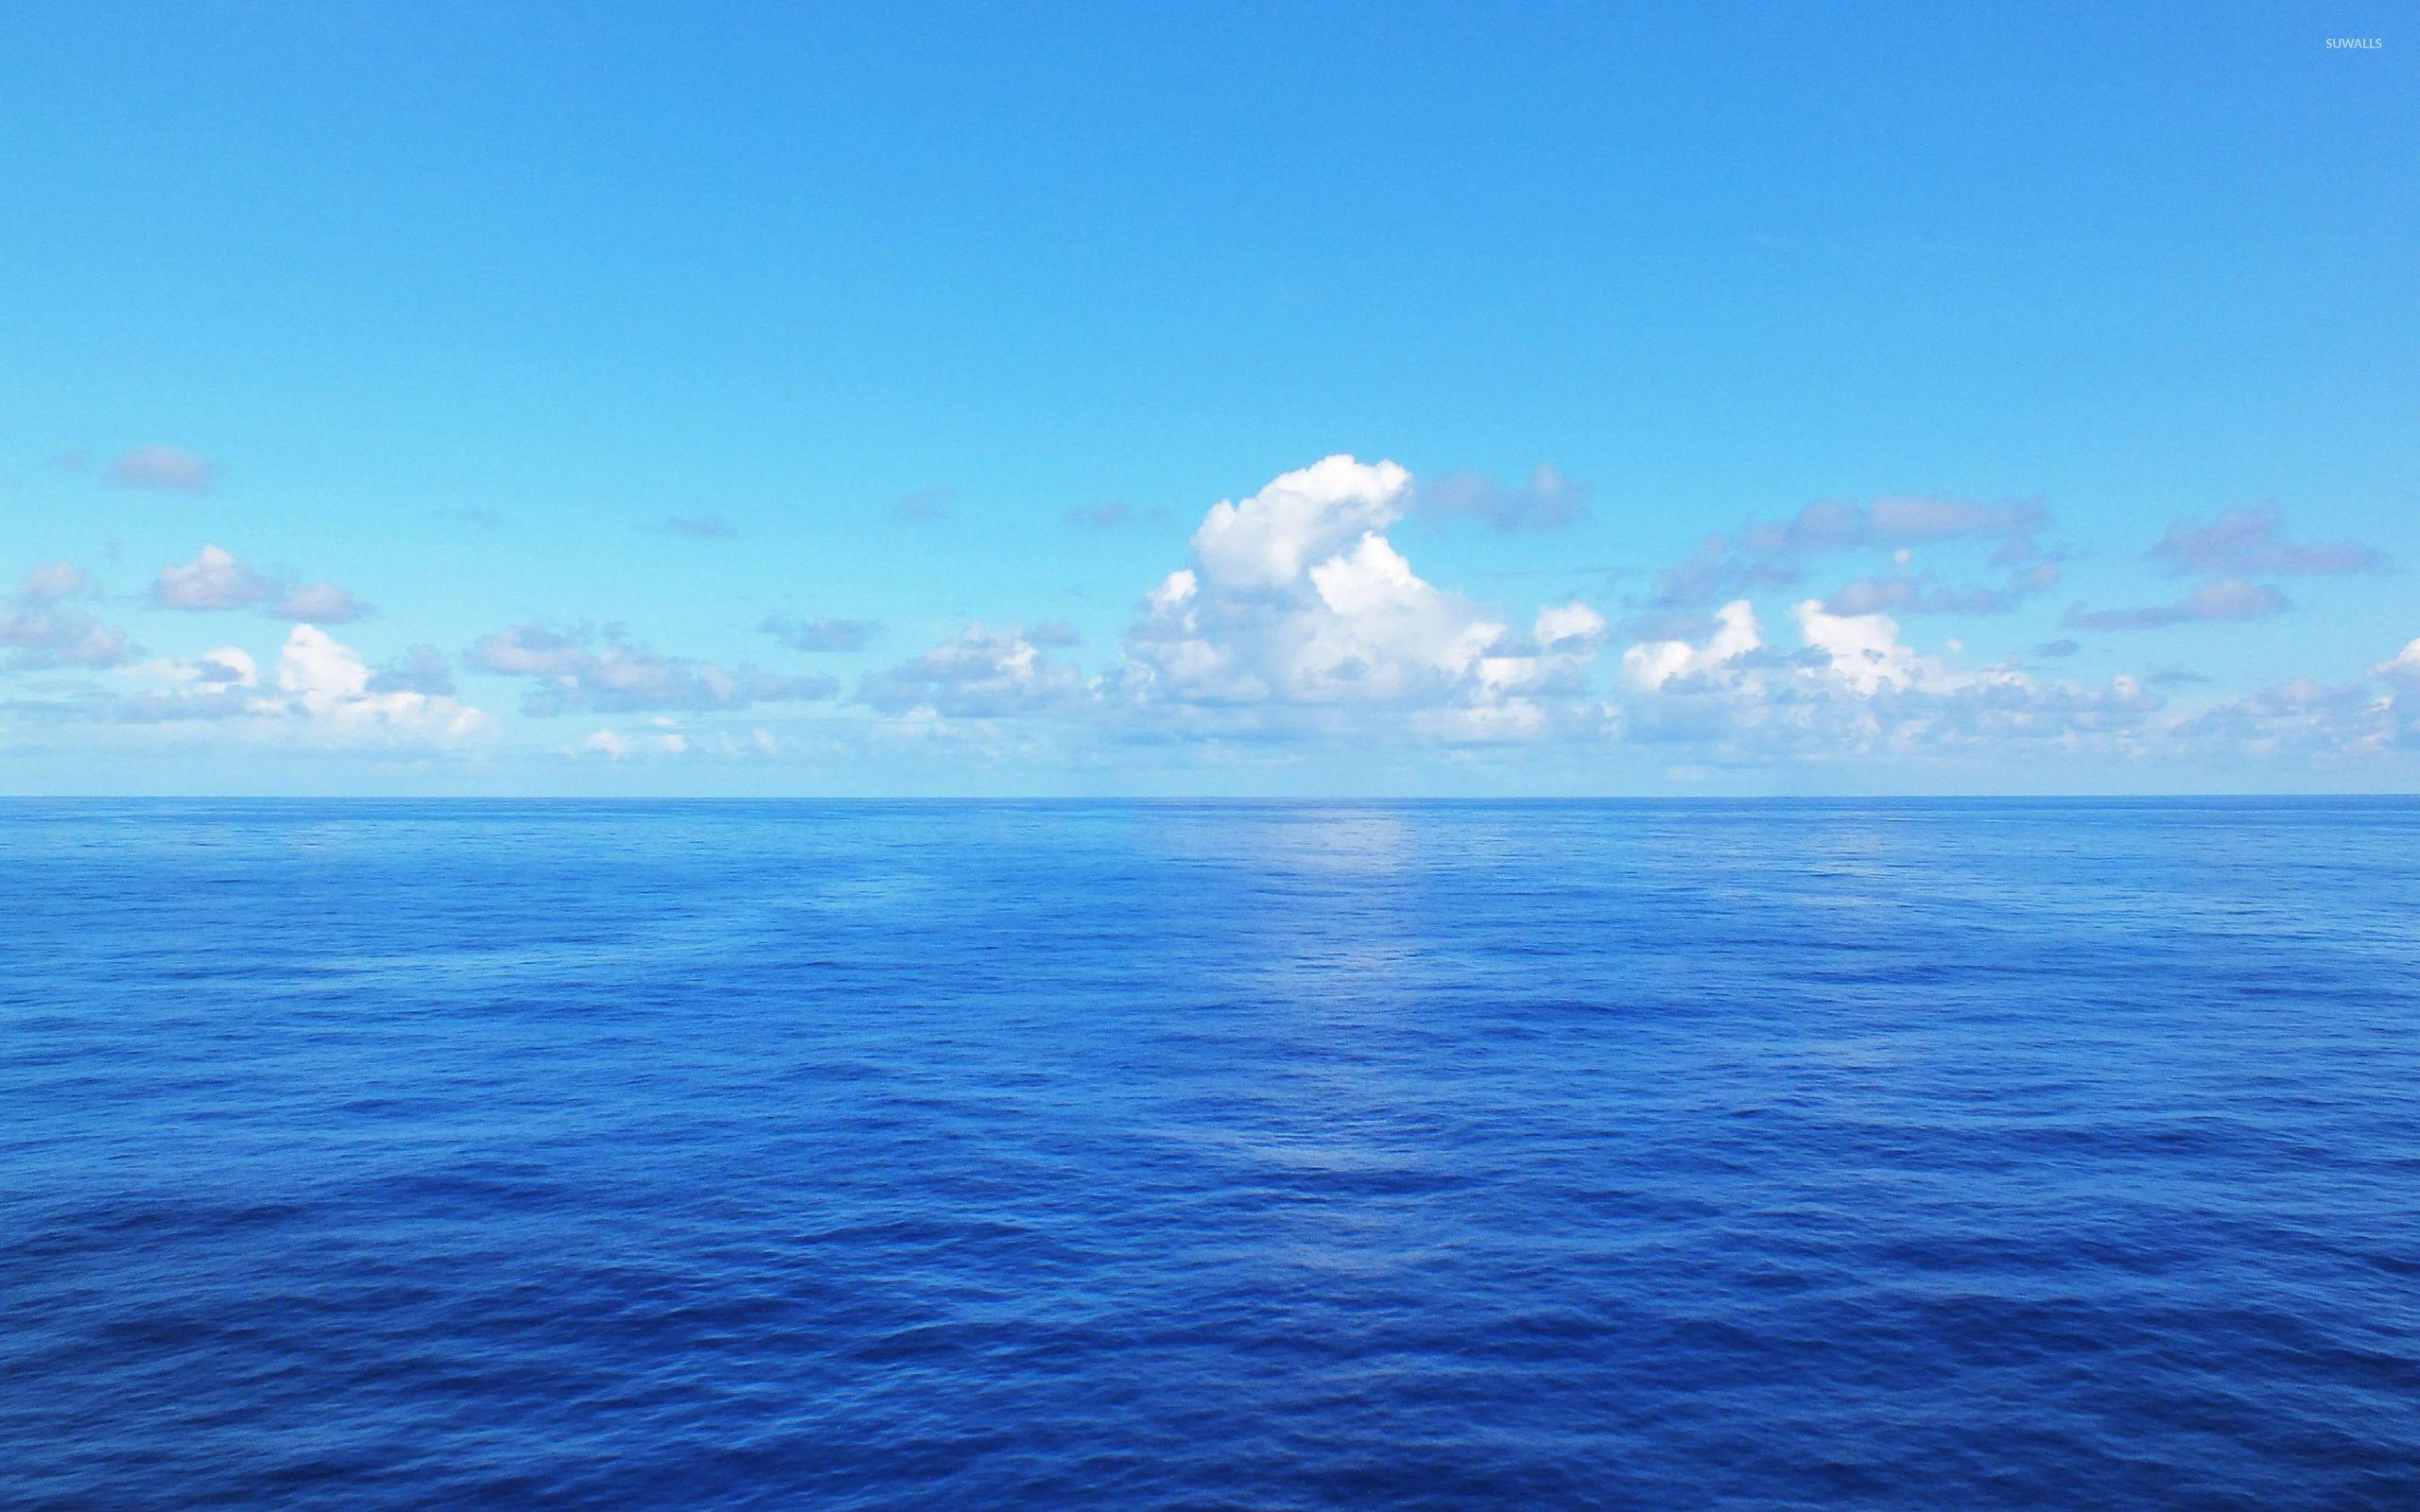 Với những gam màu xanh biển tươi trẻ, những bức hình nền đại dương xanh sẽ là lựa chọn hoàn hảo cho những ai muốn tìm kiếm một không gian nghỉ ngơi đẹp và thanh bình. Hãy đến với chủ đề này để tìm kiếm những hình nền đẹp mắt và ấn tượng nhất!